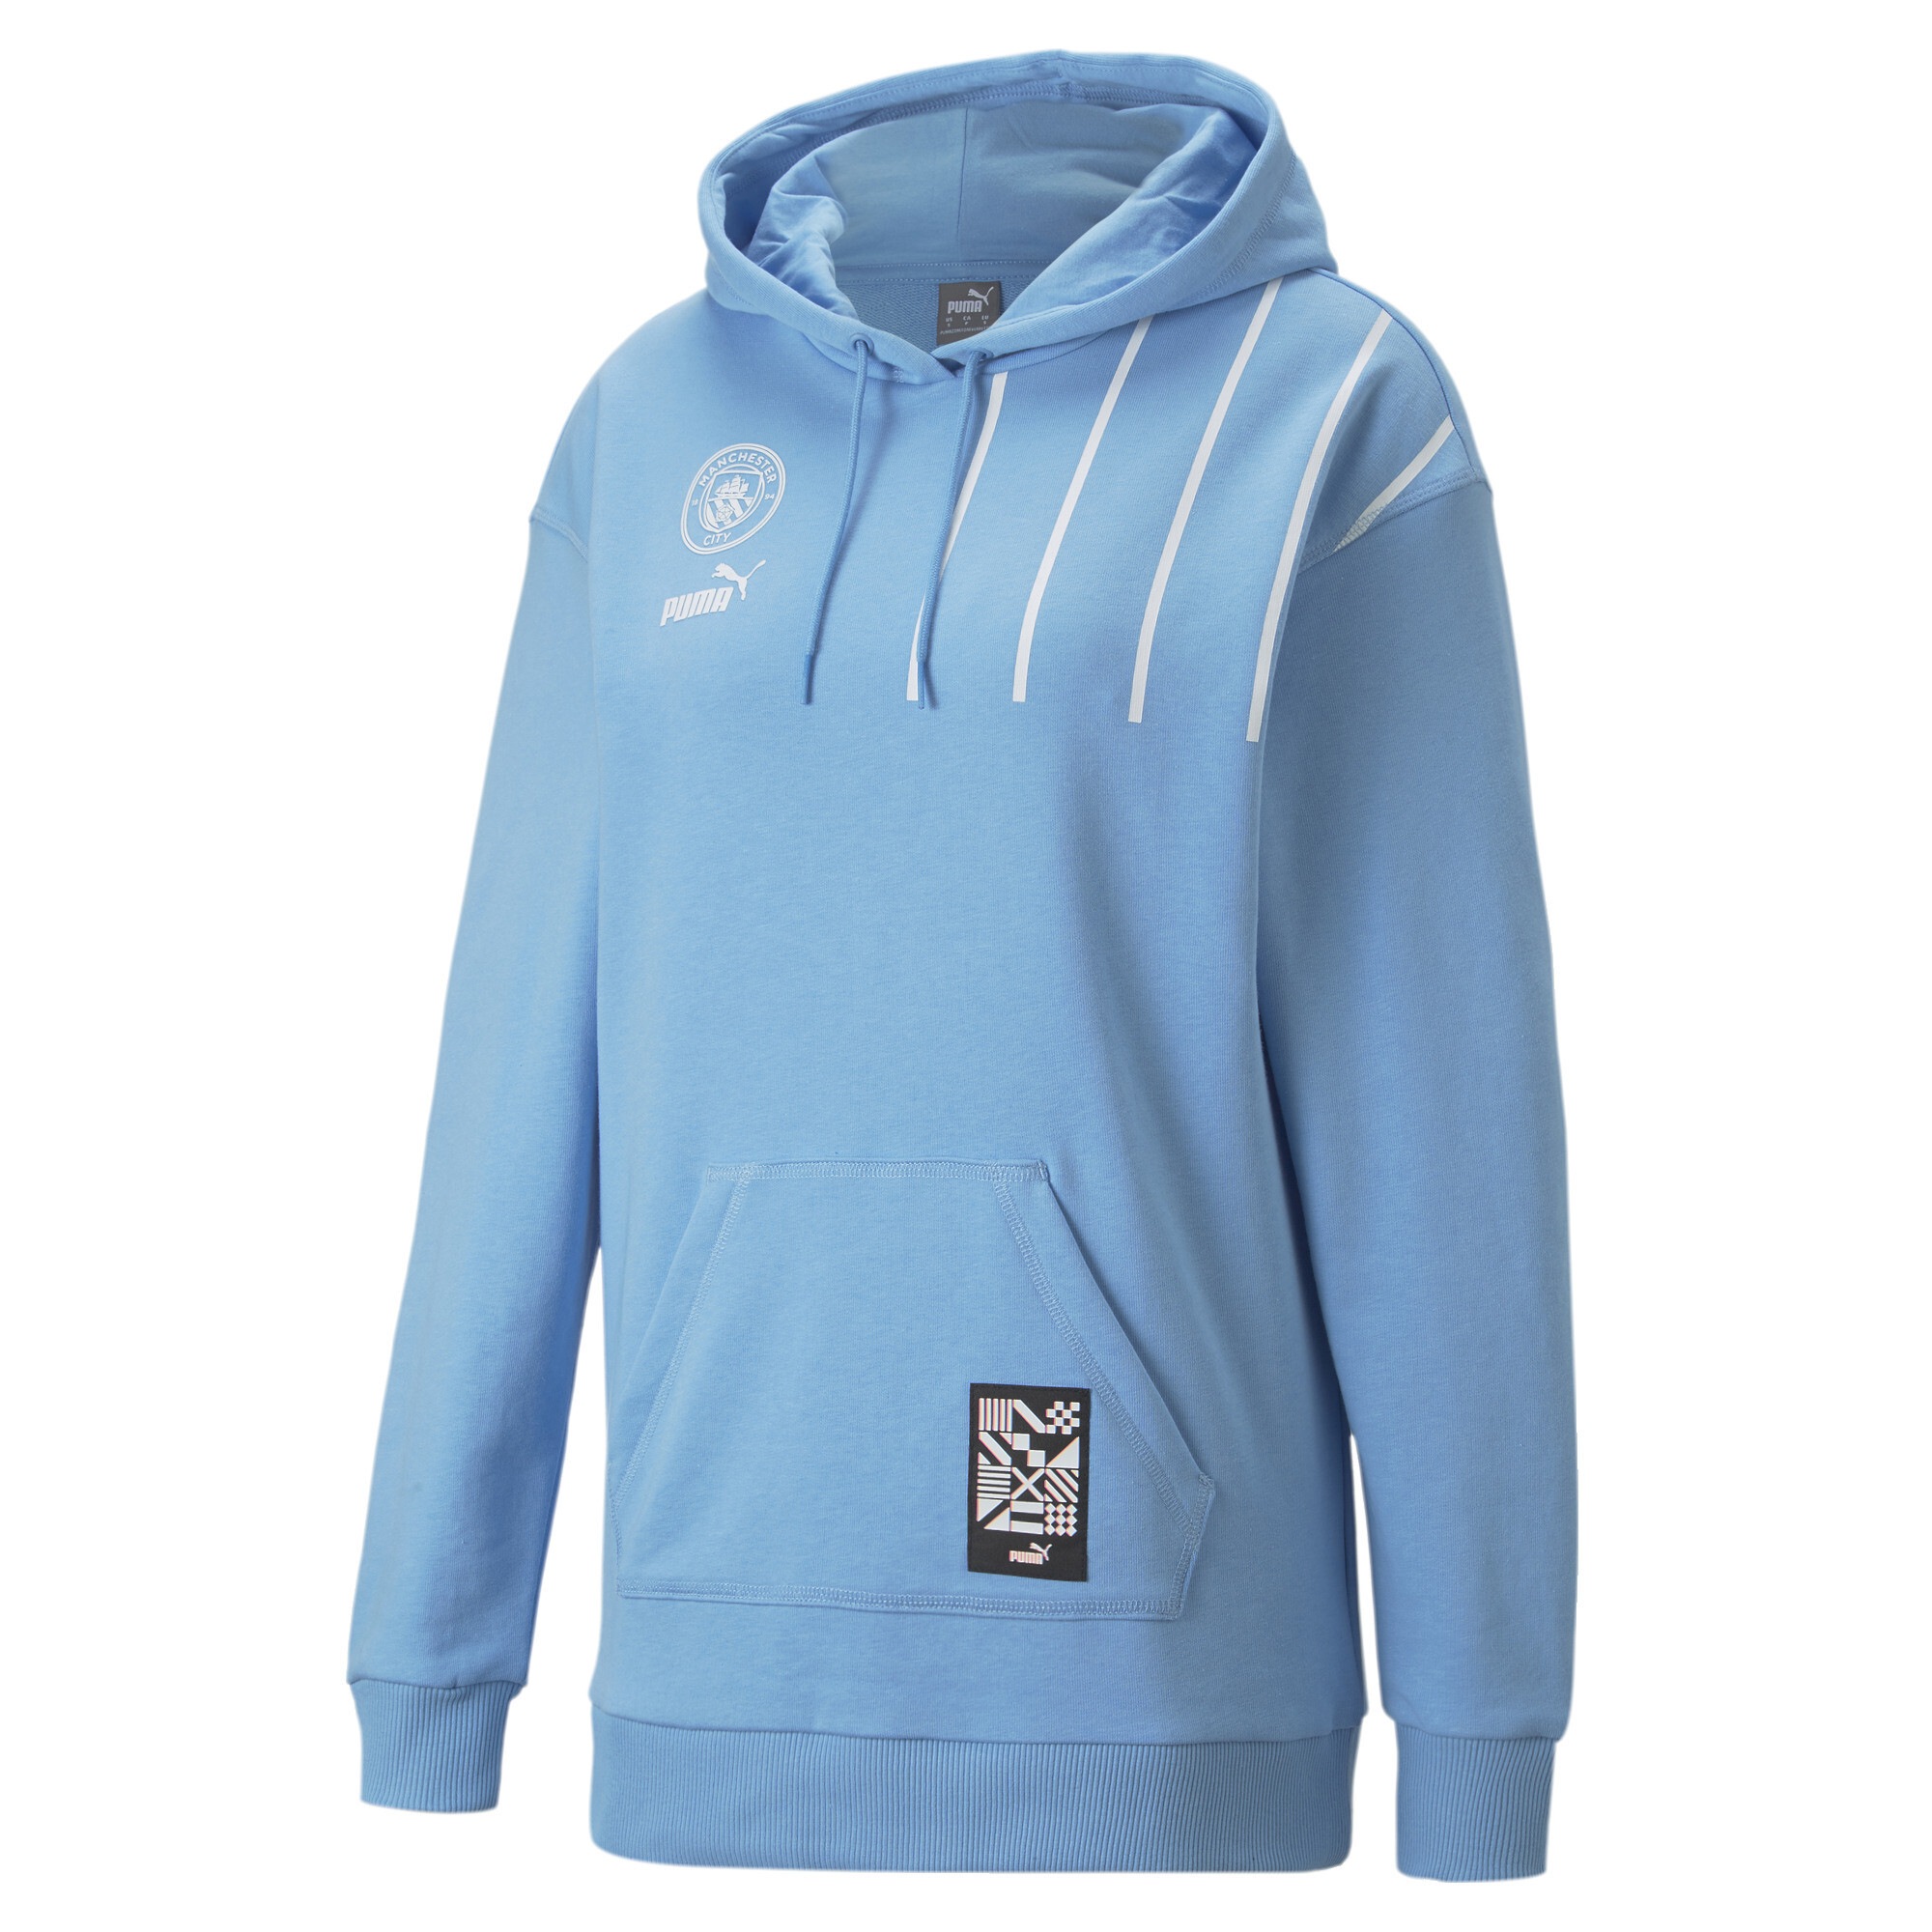 Sparen Sie 19% Damen Herren Bekleidung Herren Sport- PUMA Man City FtblCulture Fußball Sweatshirt in Blau Training- und Fitnesskleidung Sweatshirts 